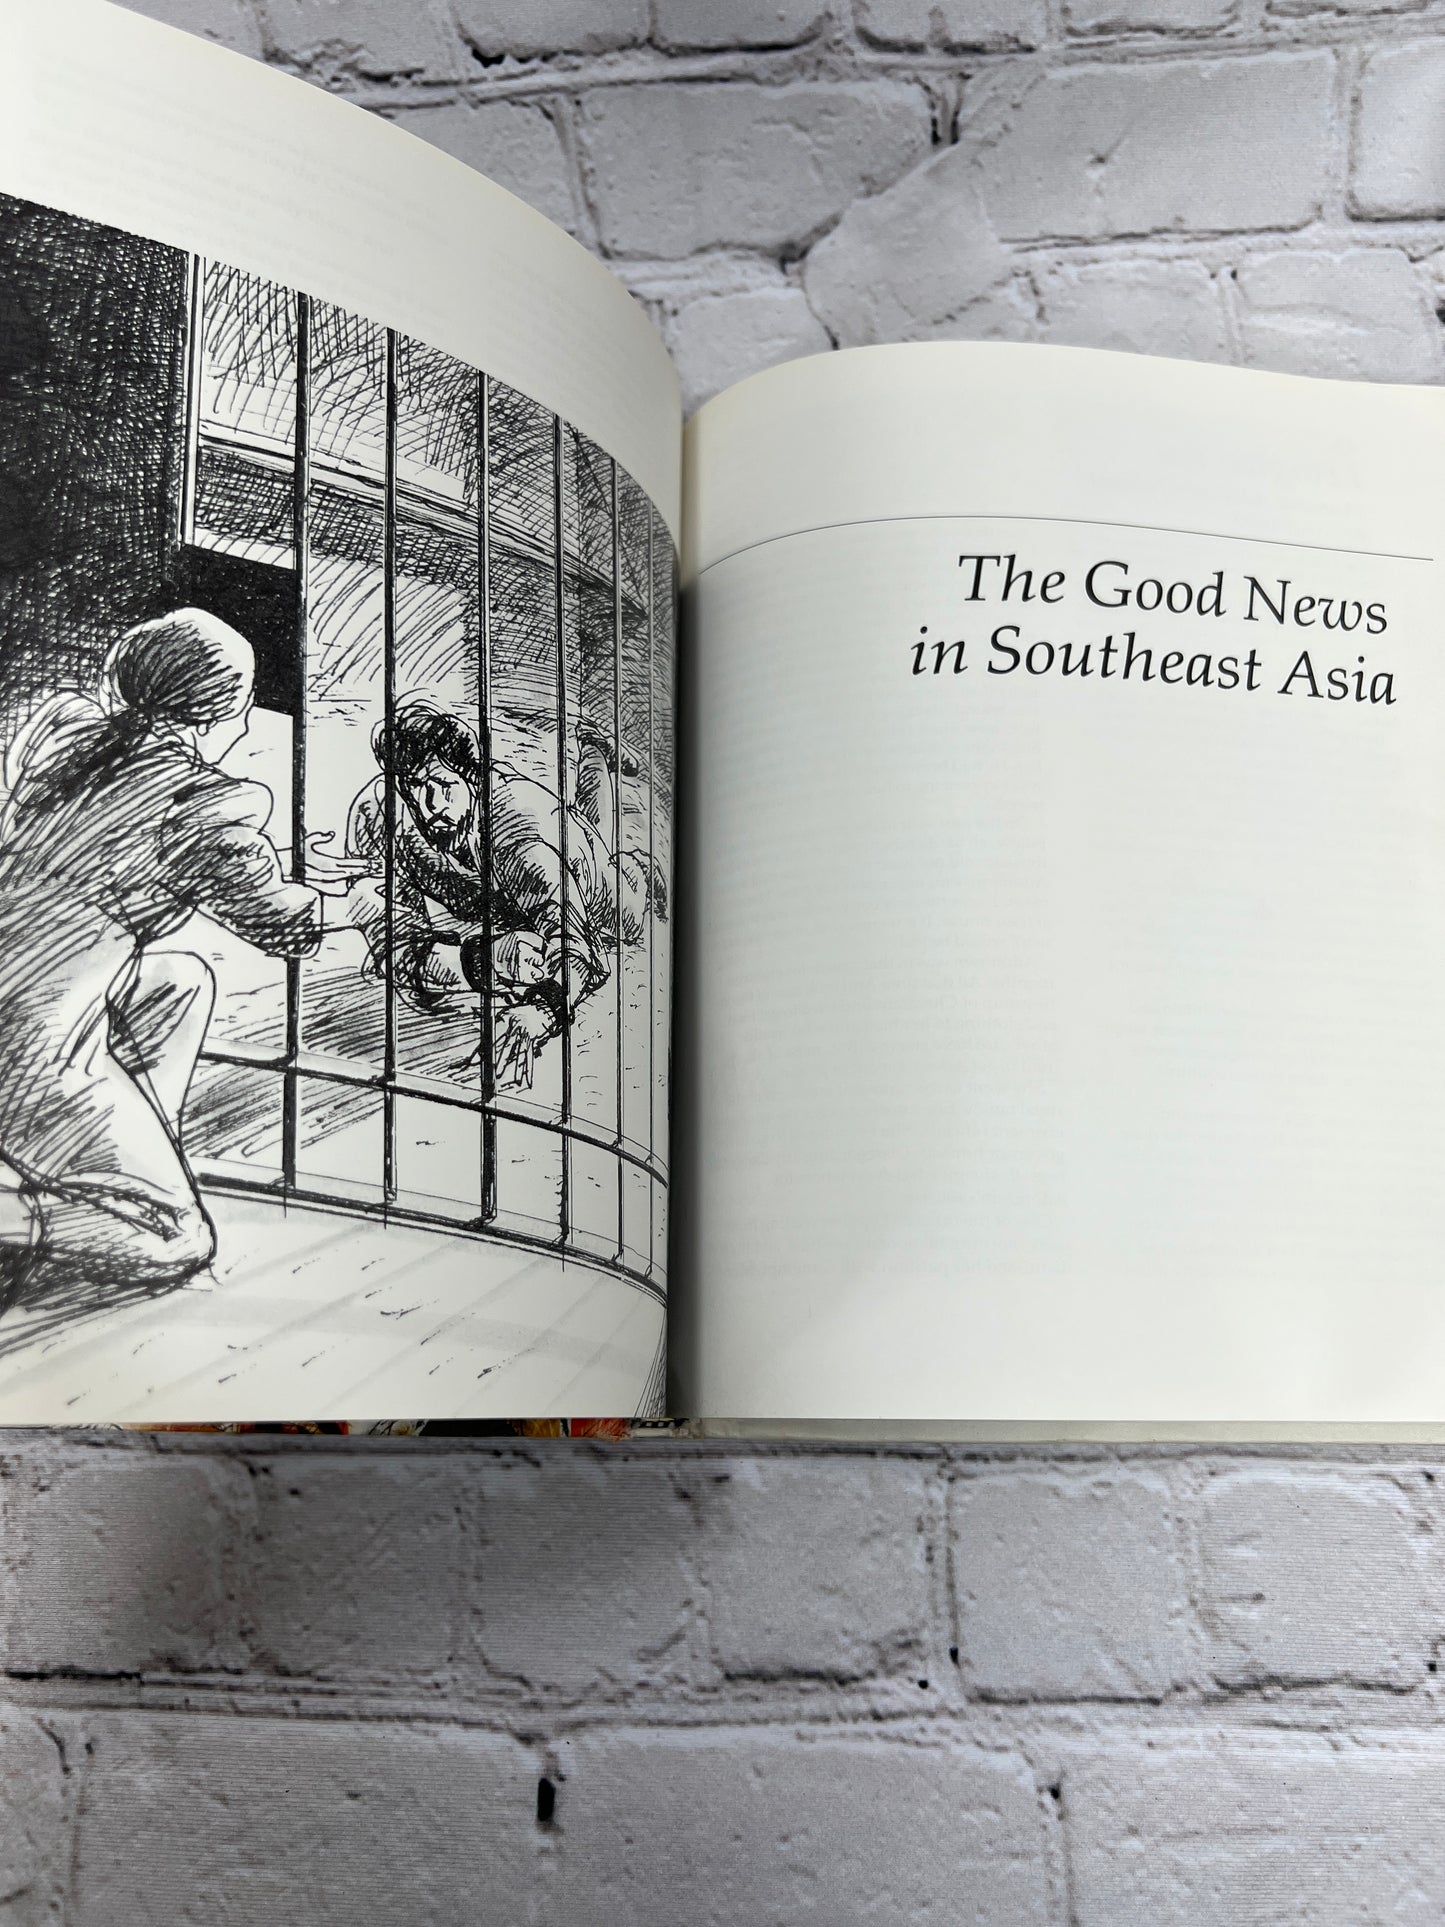 I Heard Good News Today: Stories for Children By Cornelia Lehn [1st Ed. · 1983]